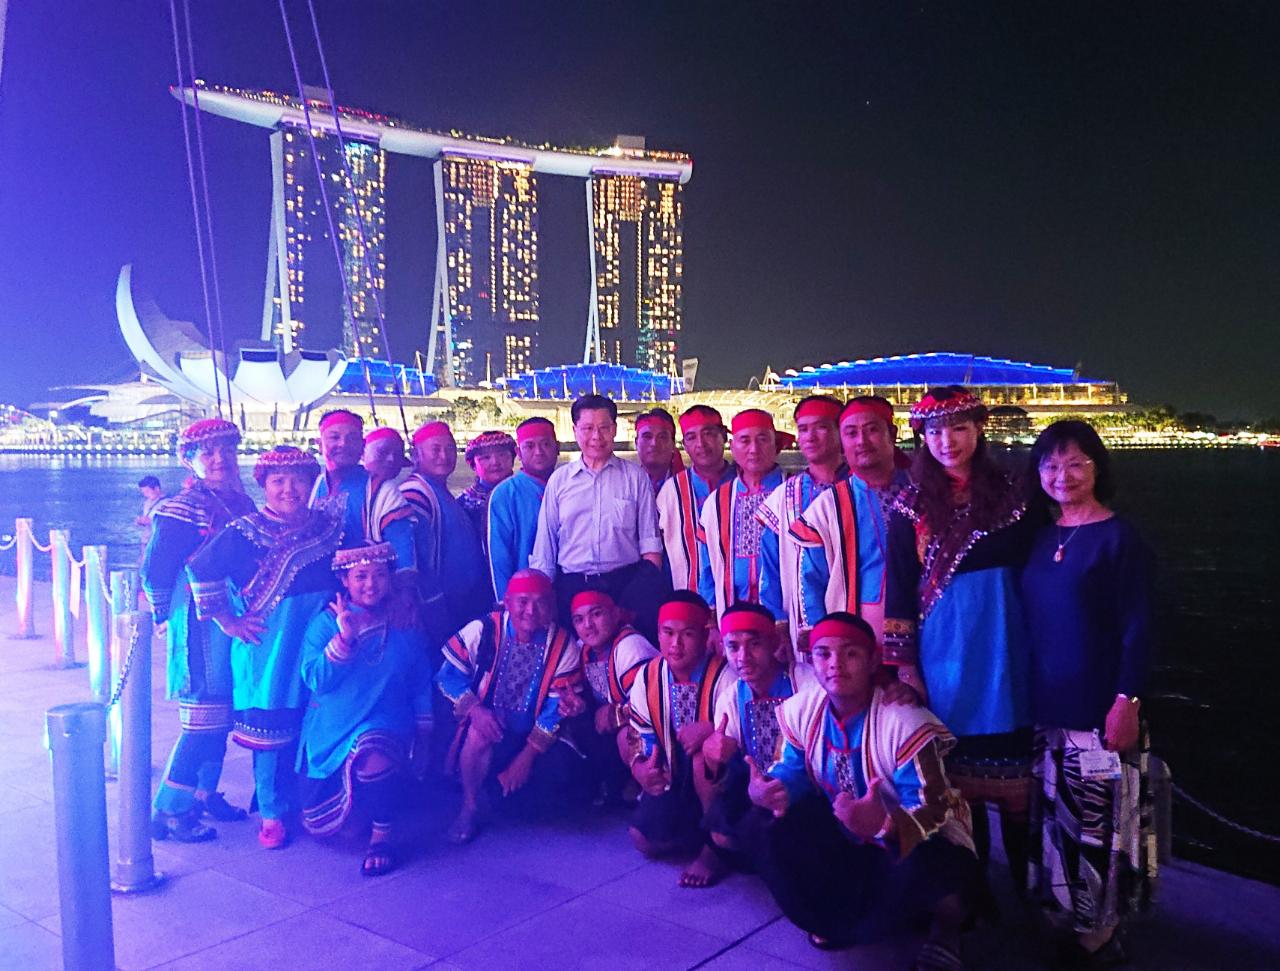 駐新加坡台北代表處代表梁國新(第二排中)於108年4月21日與臺東布農族八部合音、大提琴家張道文(第二排右二)、製作人張璇(第二排右一)在新加坡濱海灣合影。